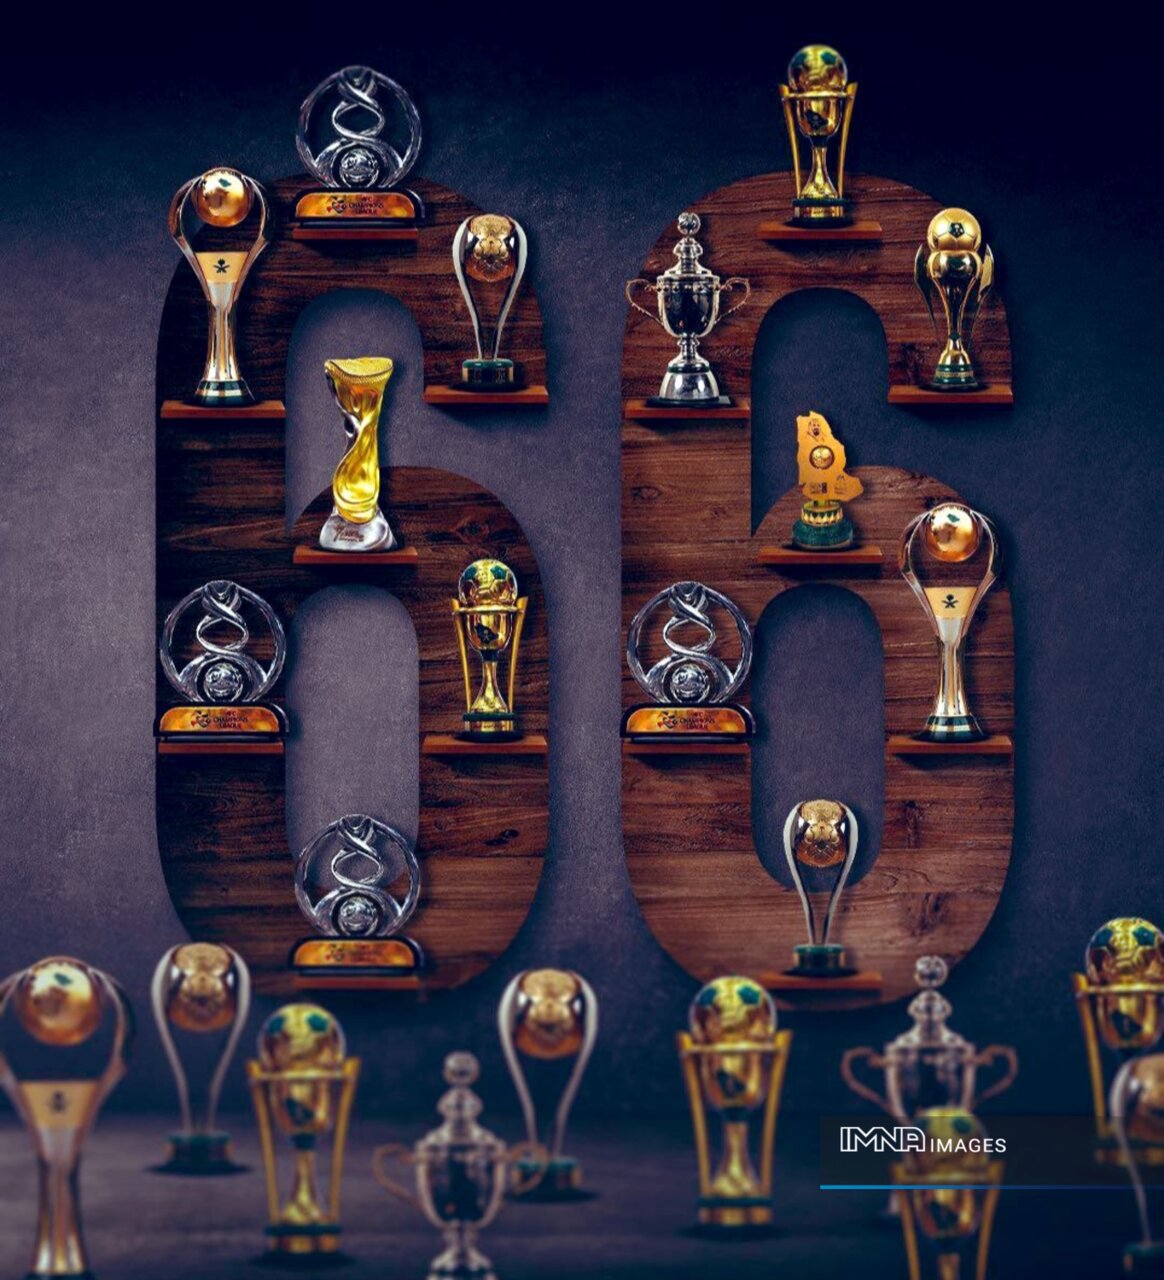 الهلال به رکورد جالب‌توجه ۶۶ قهرمانی در تاریخ رسید! +عکس